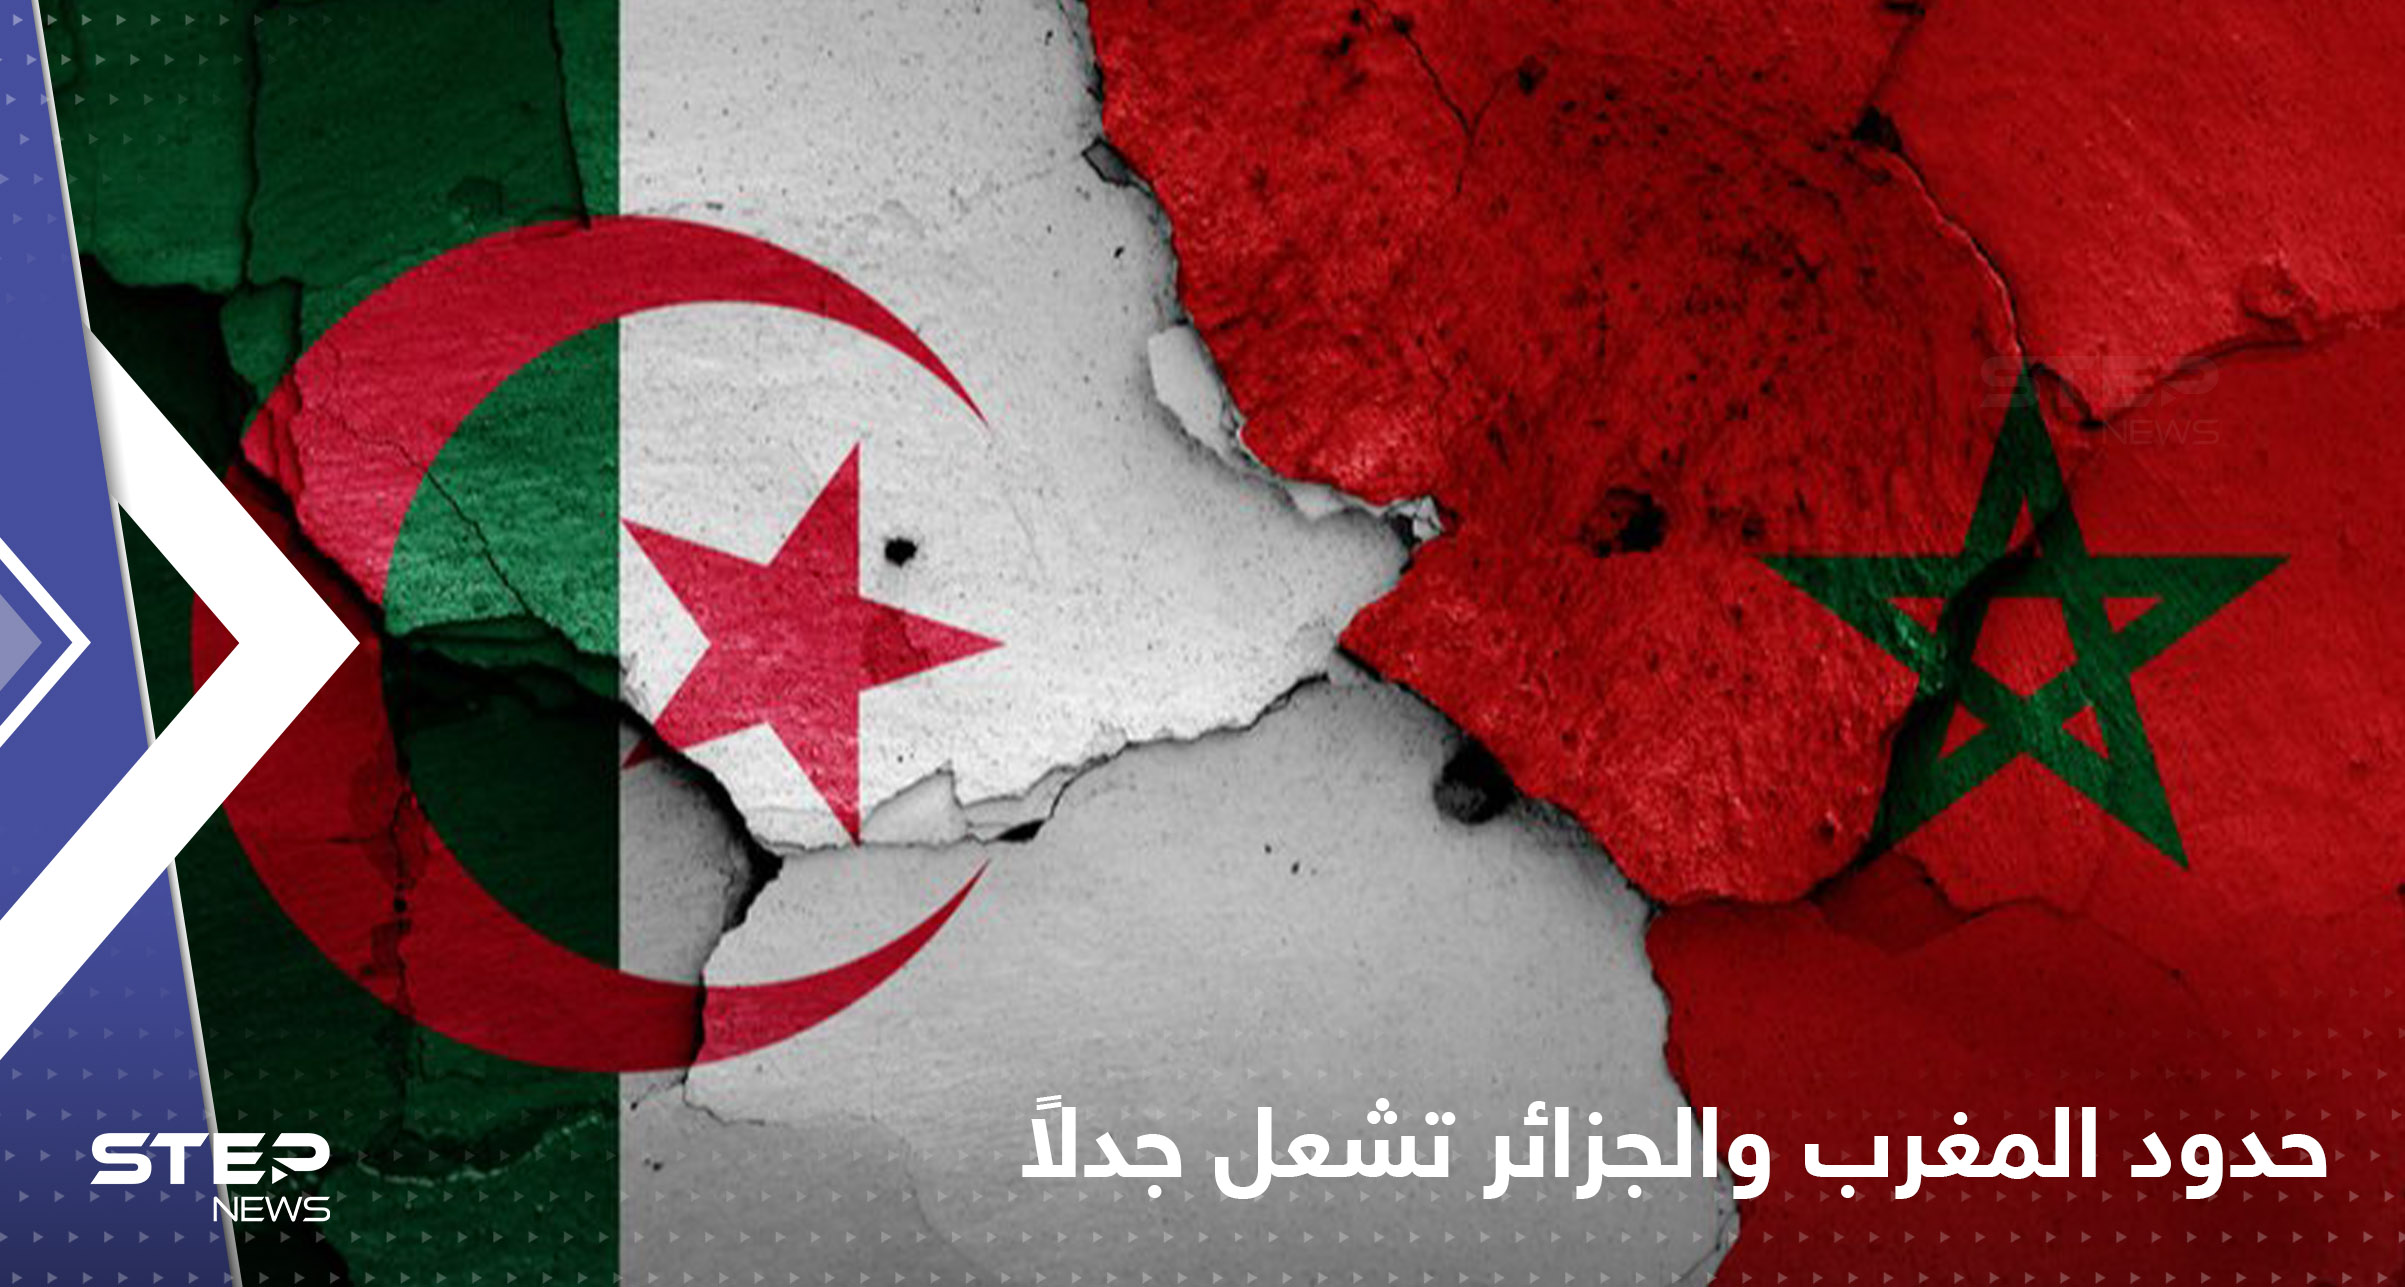 مسؤول جزائري يتهم المغرب بـ"احتلال" أرض من بلاده بمساعدة فرنسا